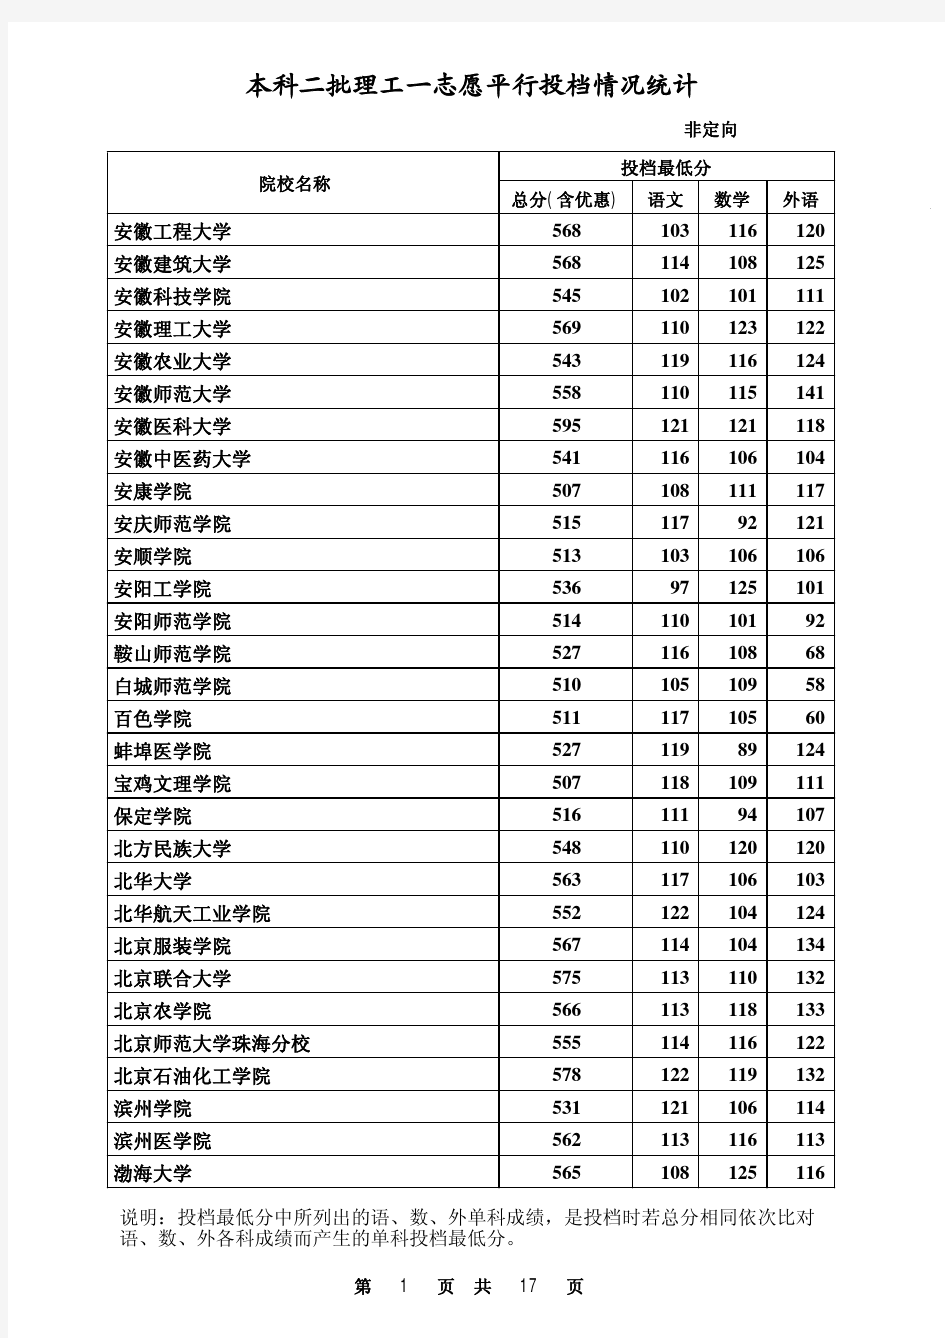 2014年河北省本科二批理工类一志愿平行投档情况统计